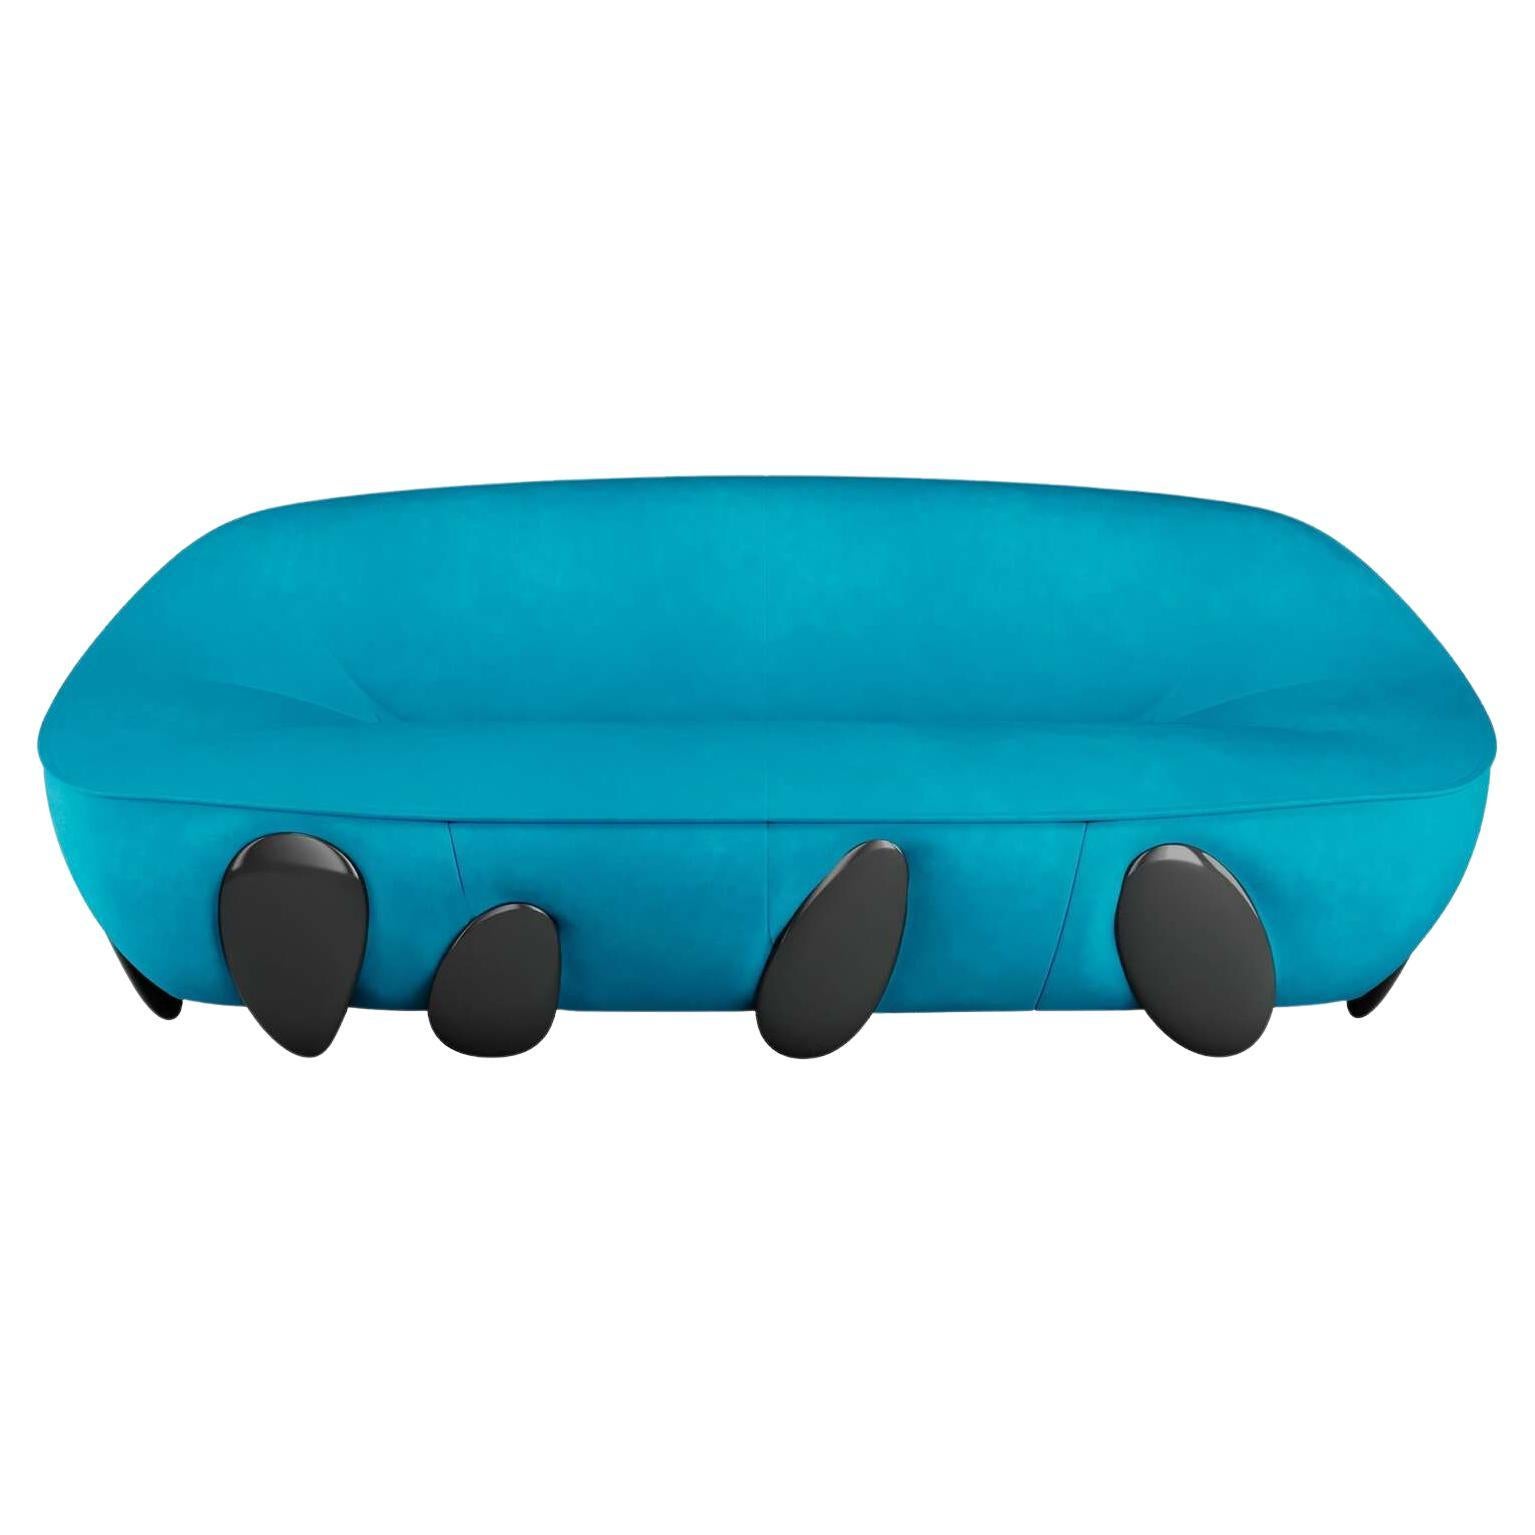 Canapé rond contemporain en velours bleu avec pieds laqués noirs